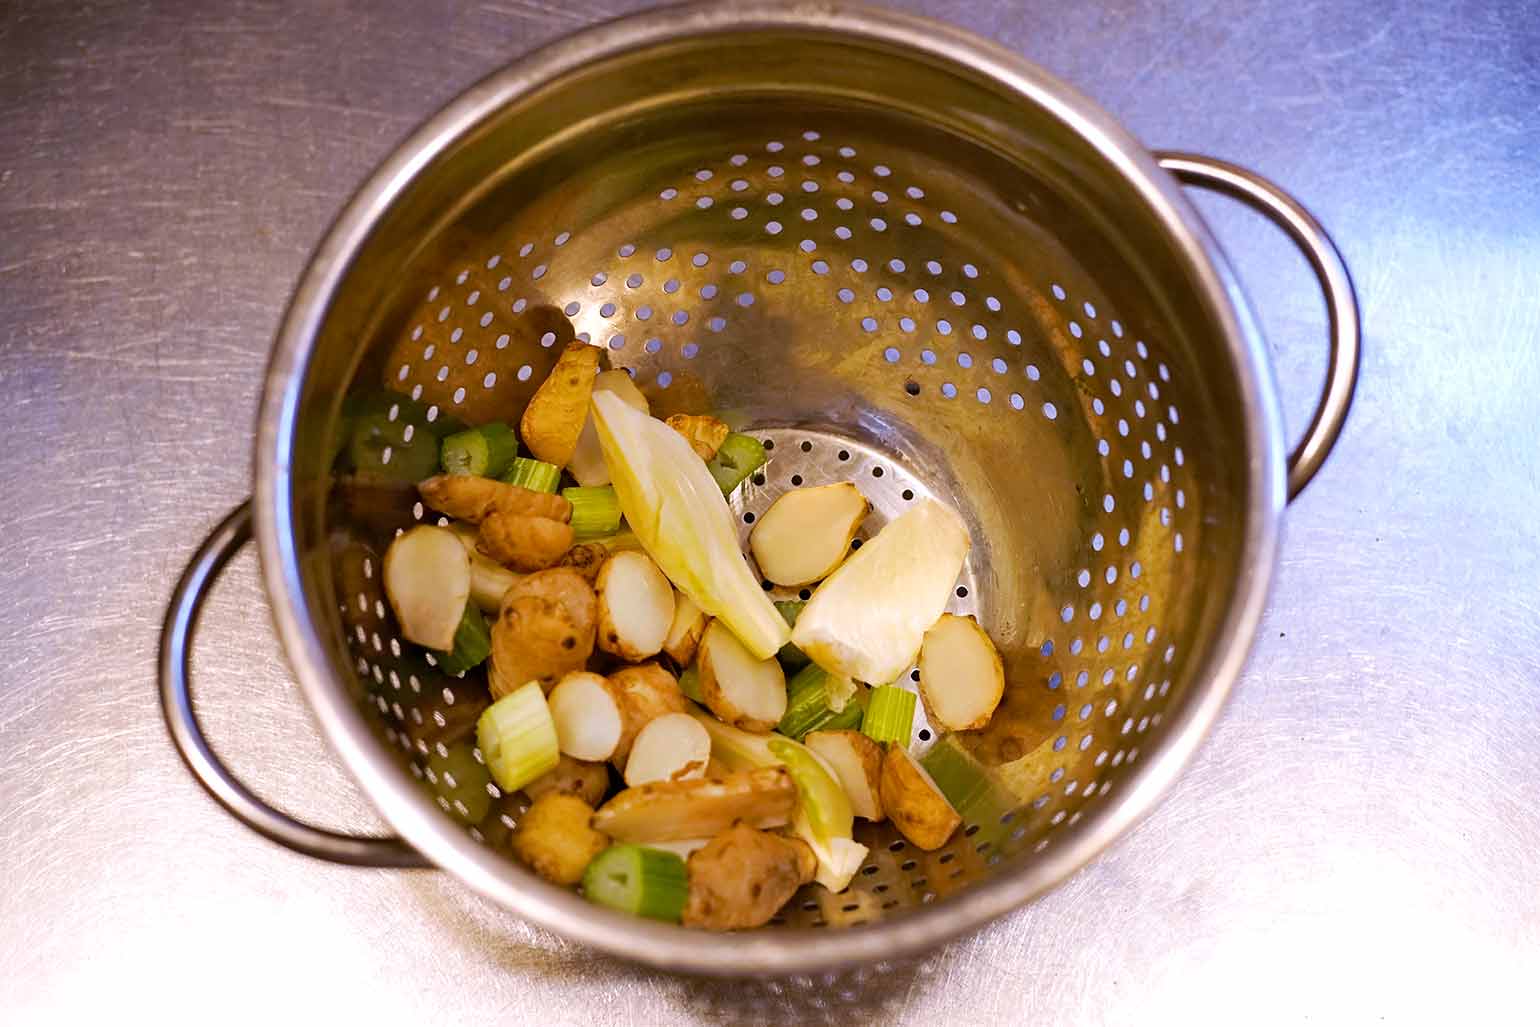 chef recipes artichokes process 6 1540x1027